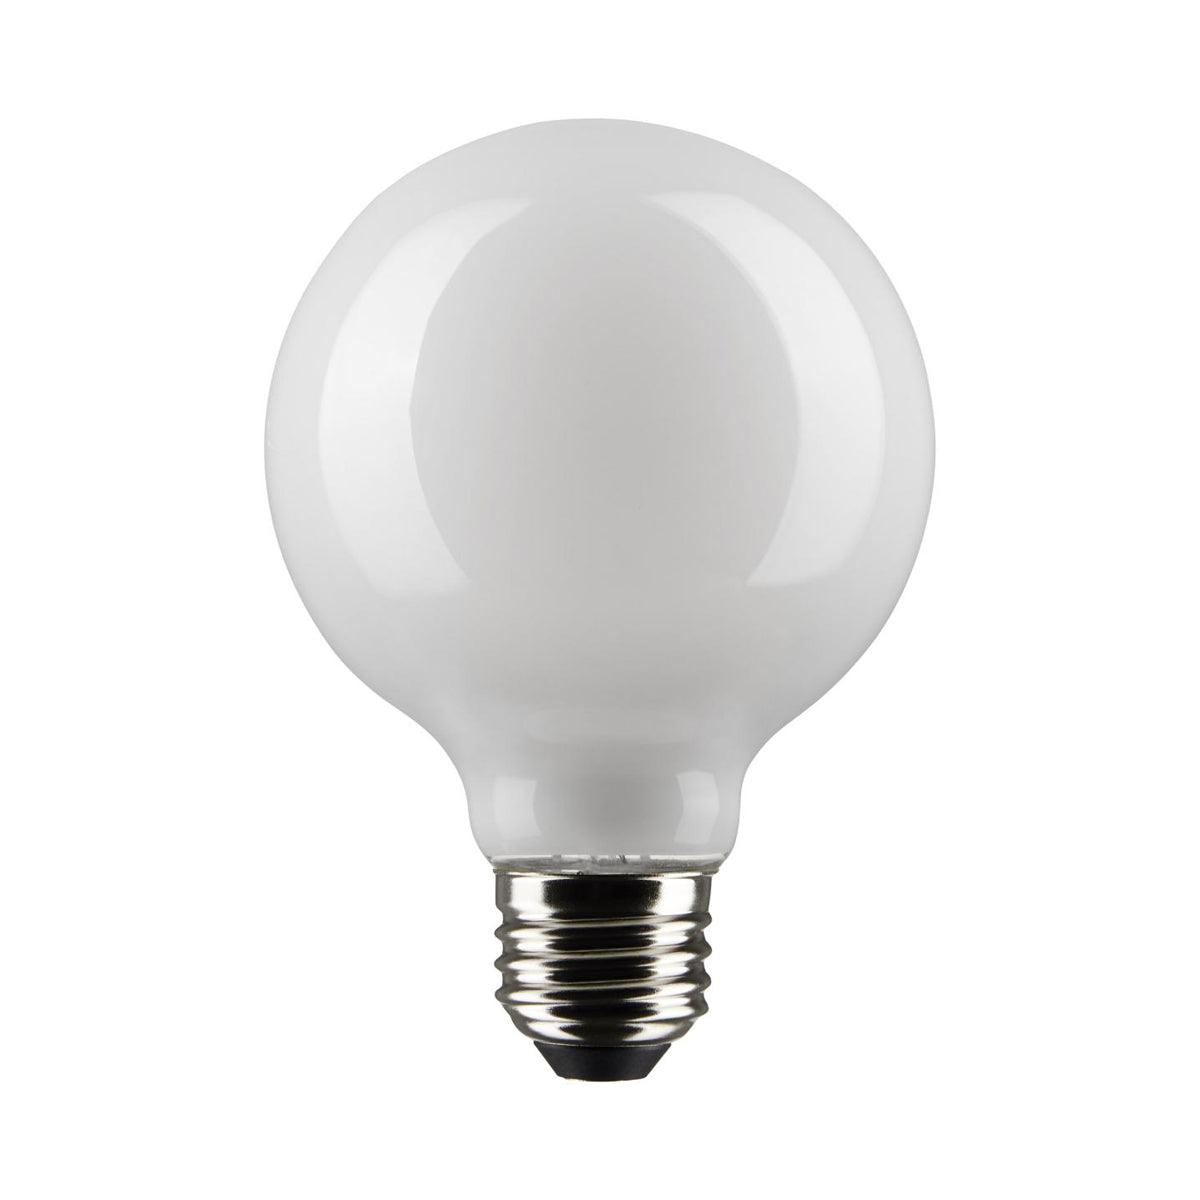 G25 LED Globe Bulb, 6 Watt, 500 Lumens, 2700K, E26 Medium Base, Frosted Finish, Pack Of 2 - Bees Lighting